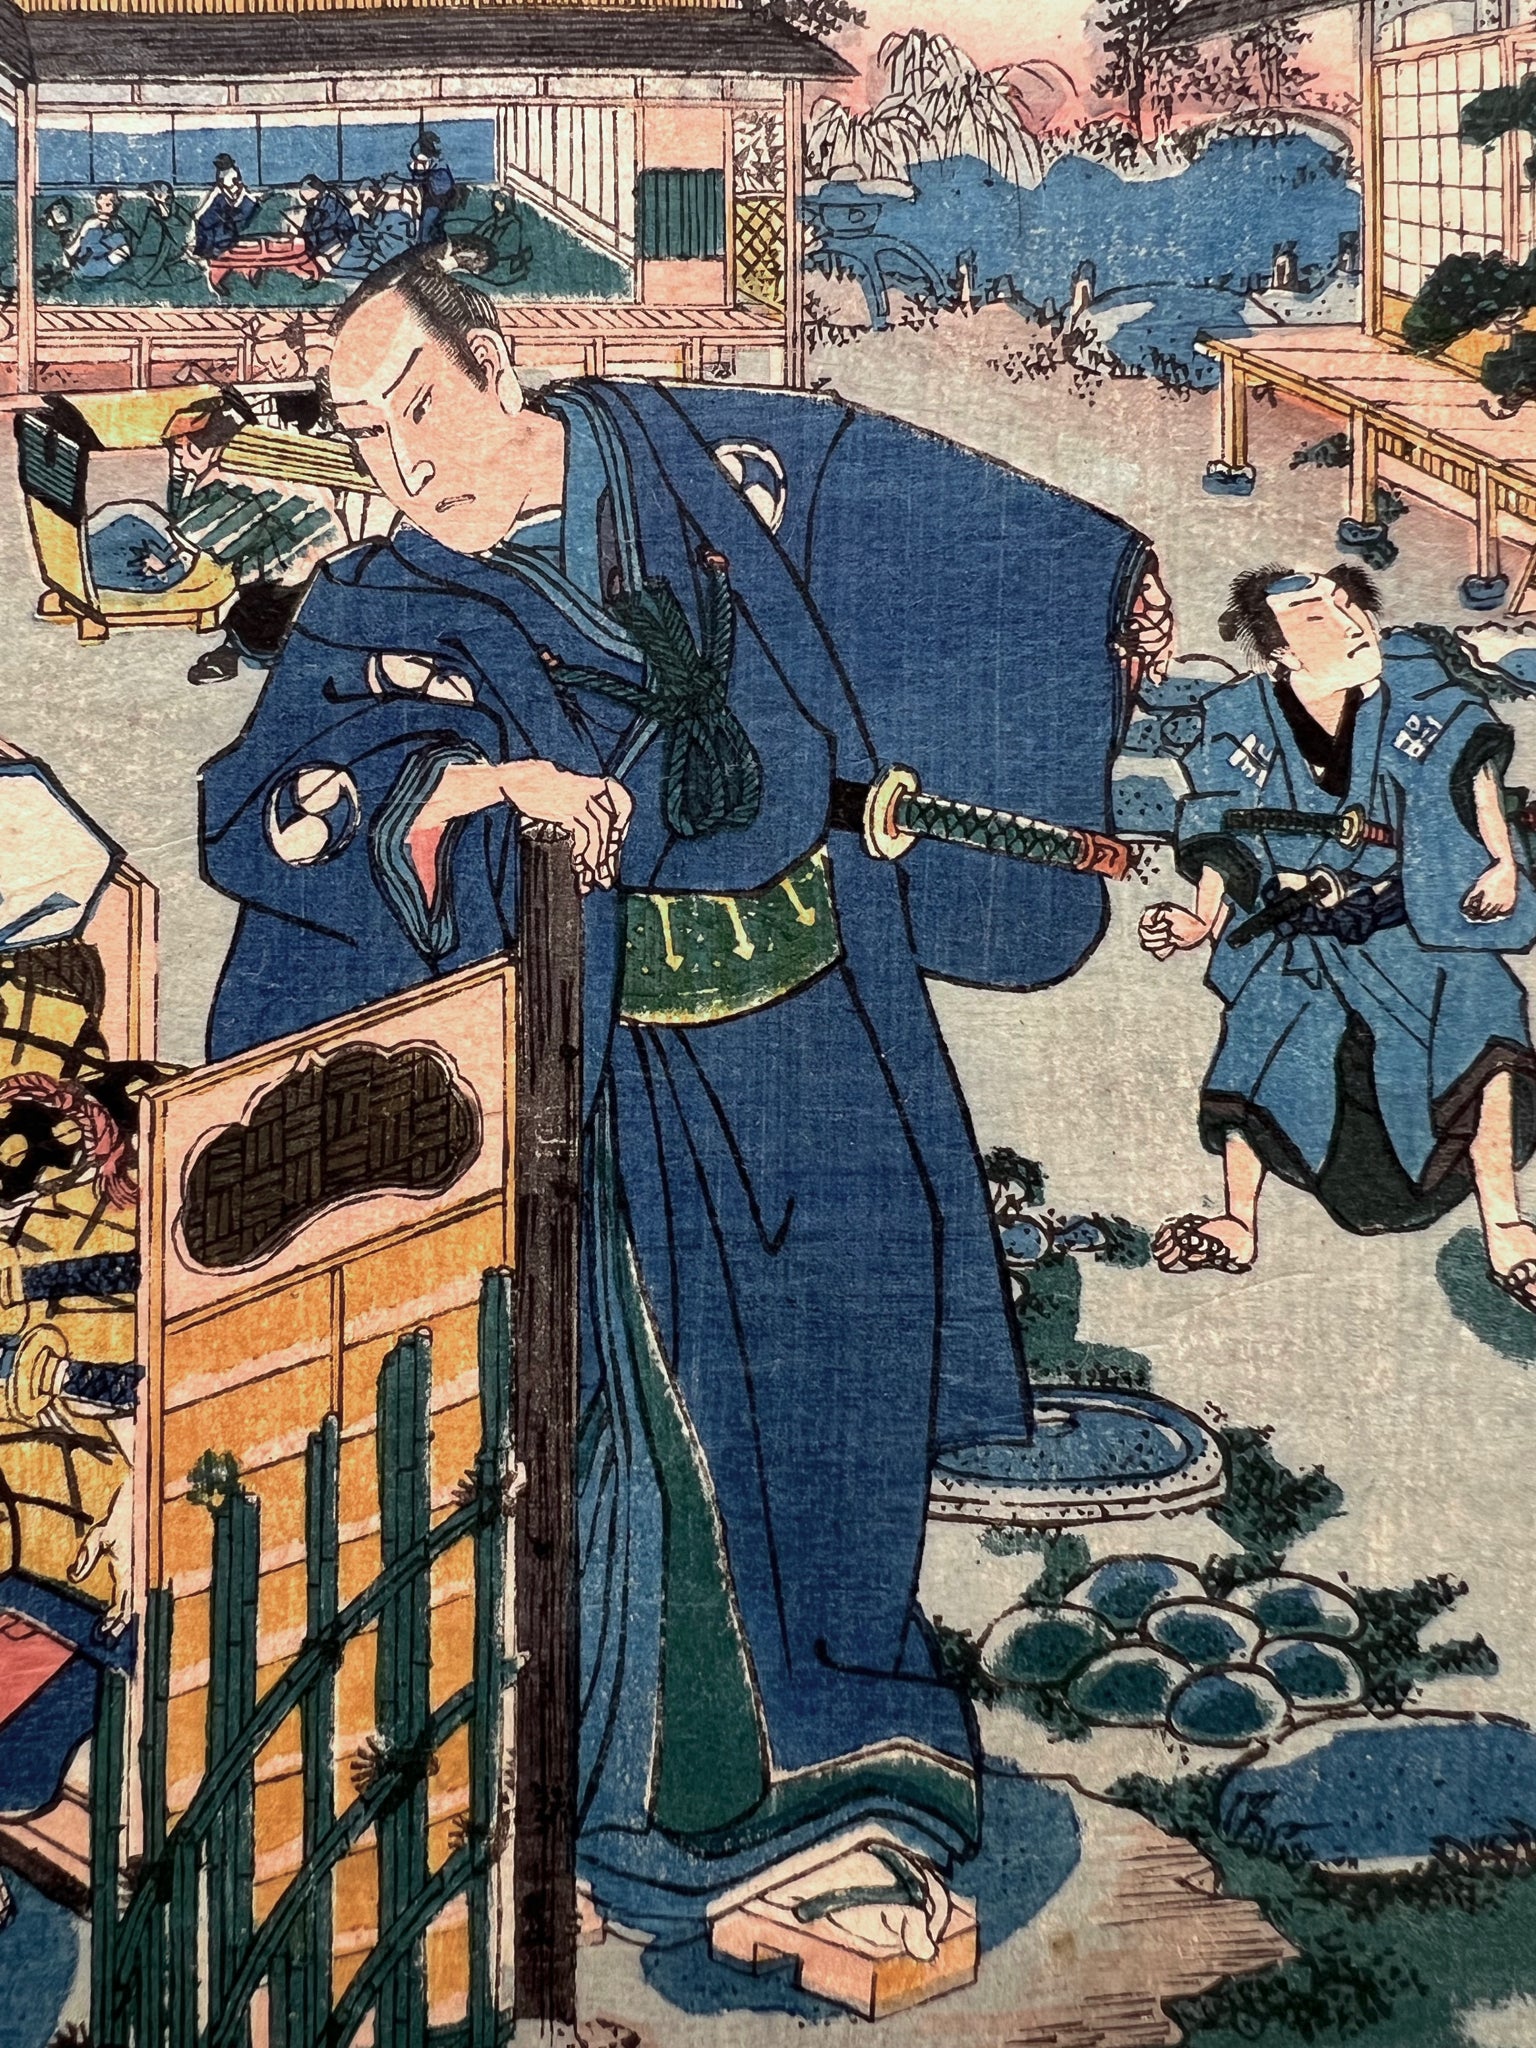 estampe japonaise rencontre discrete de samourai ronin dans la cour intérieure d'une maison de thé, samourai en kimono bleu